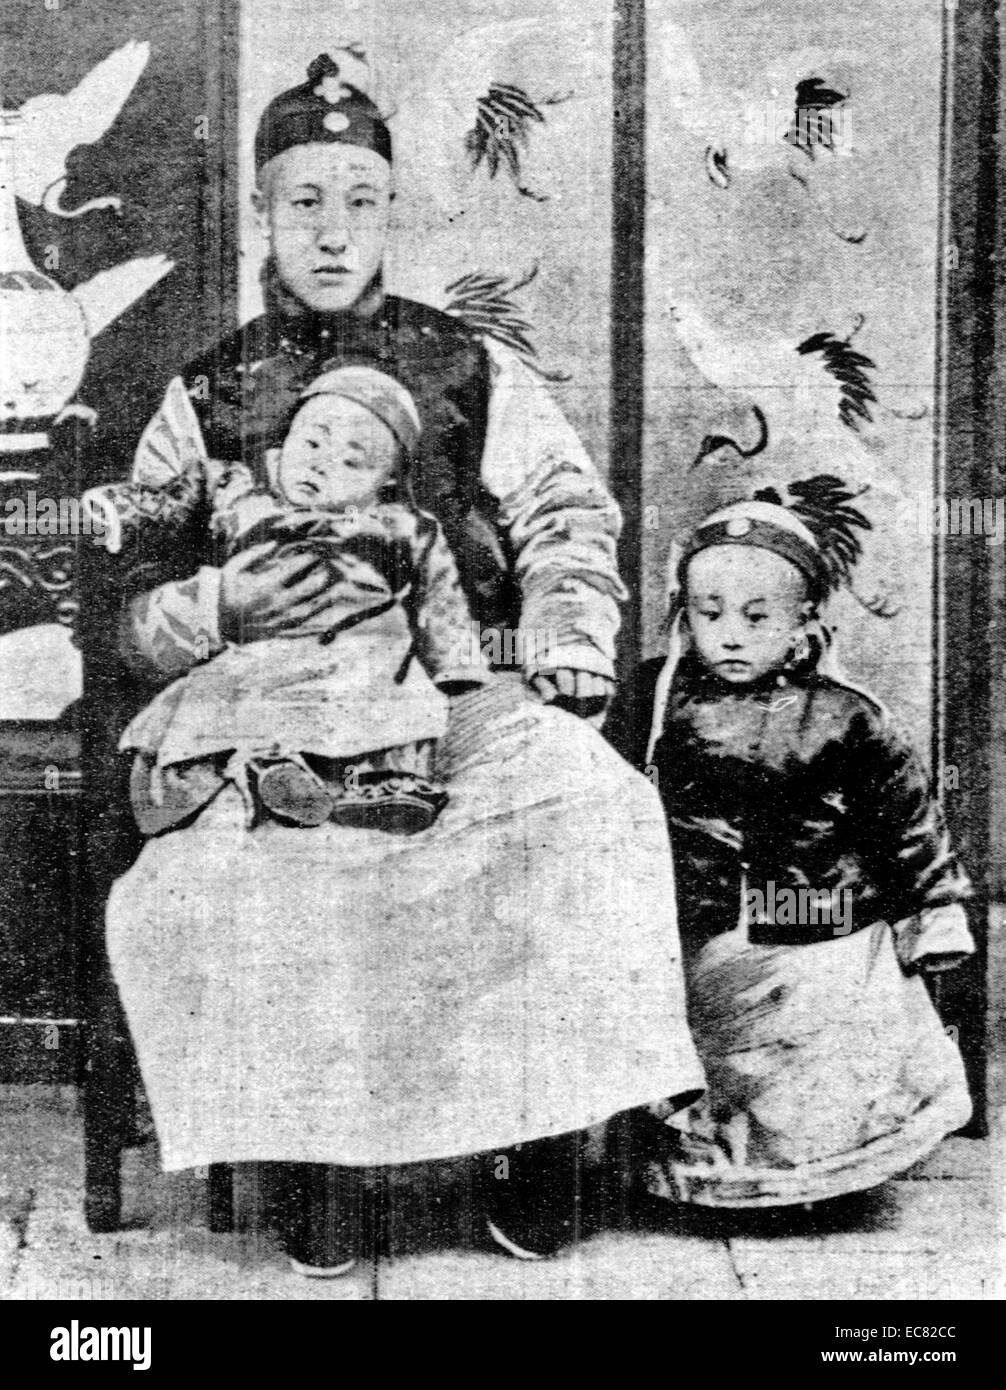 Immagine di un giovane imperatore Puyi, l'ultimo imperatore della Cina. Egli sta accanto alla sua regent padre e fratello minore. Fotografia scattata intorno al 1909. Foto Stock